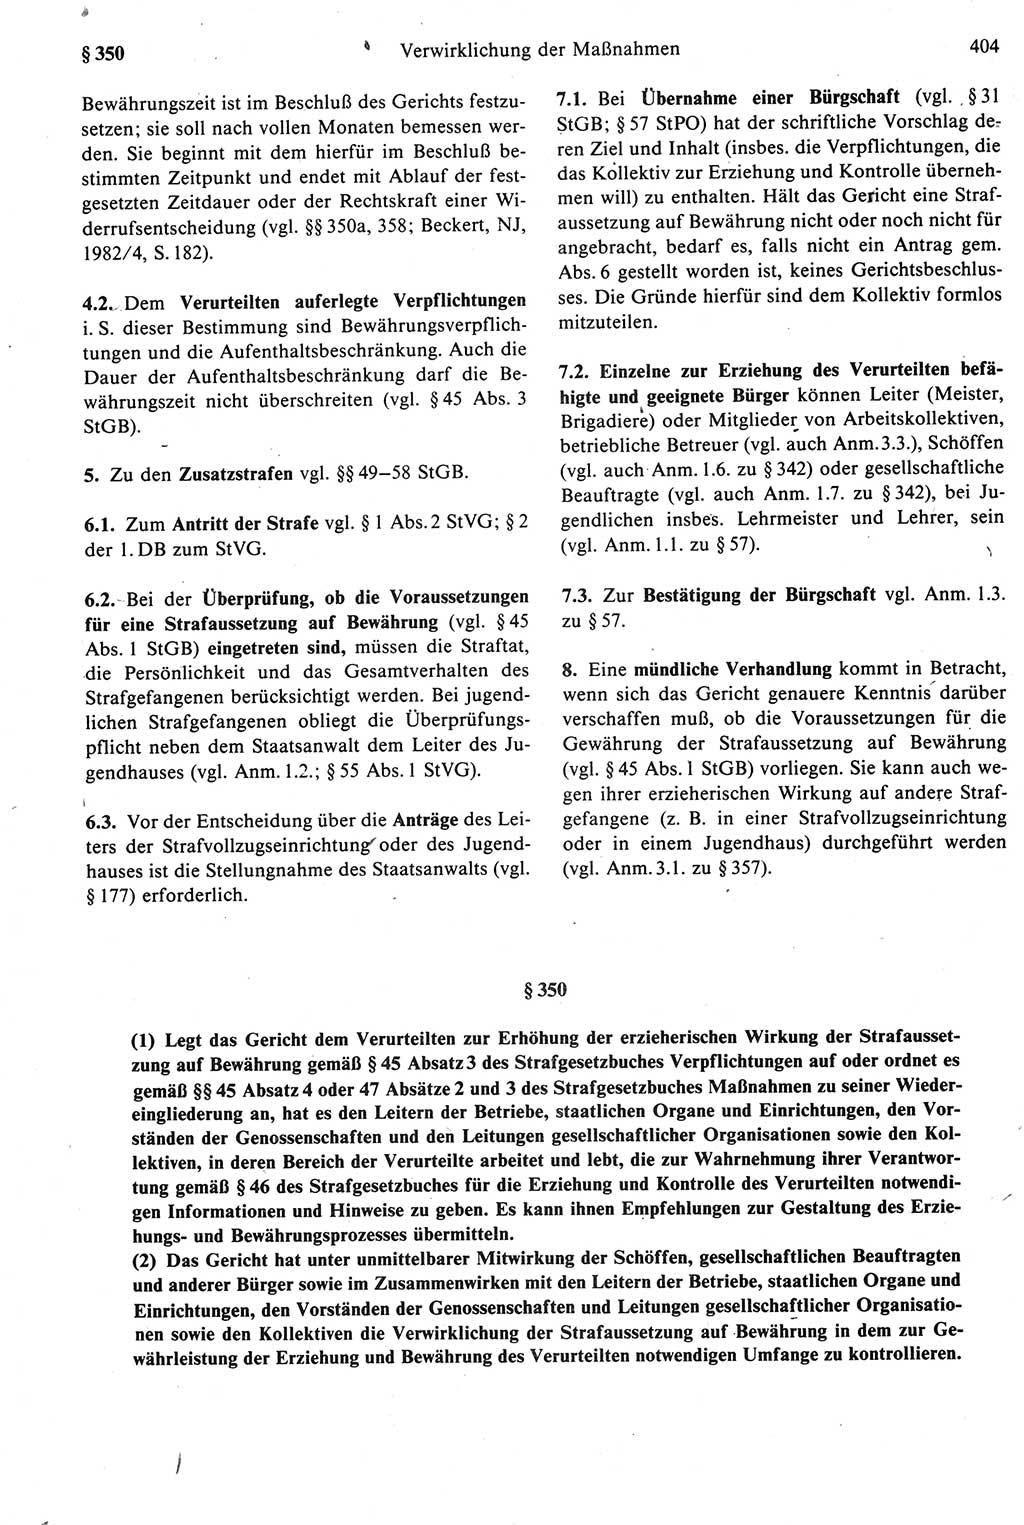 Strafprozeßrecht der DDR [Deutsche Demokratische Republik], Kommentar zur Strafprozeßordnung (StPO) 1987, Seite 404 (Strafprozeßr. DDR Komm. StPO 1987, S. 404)